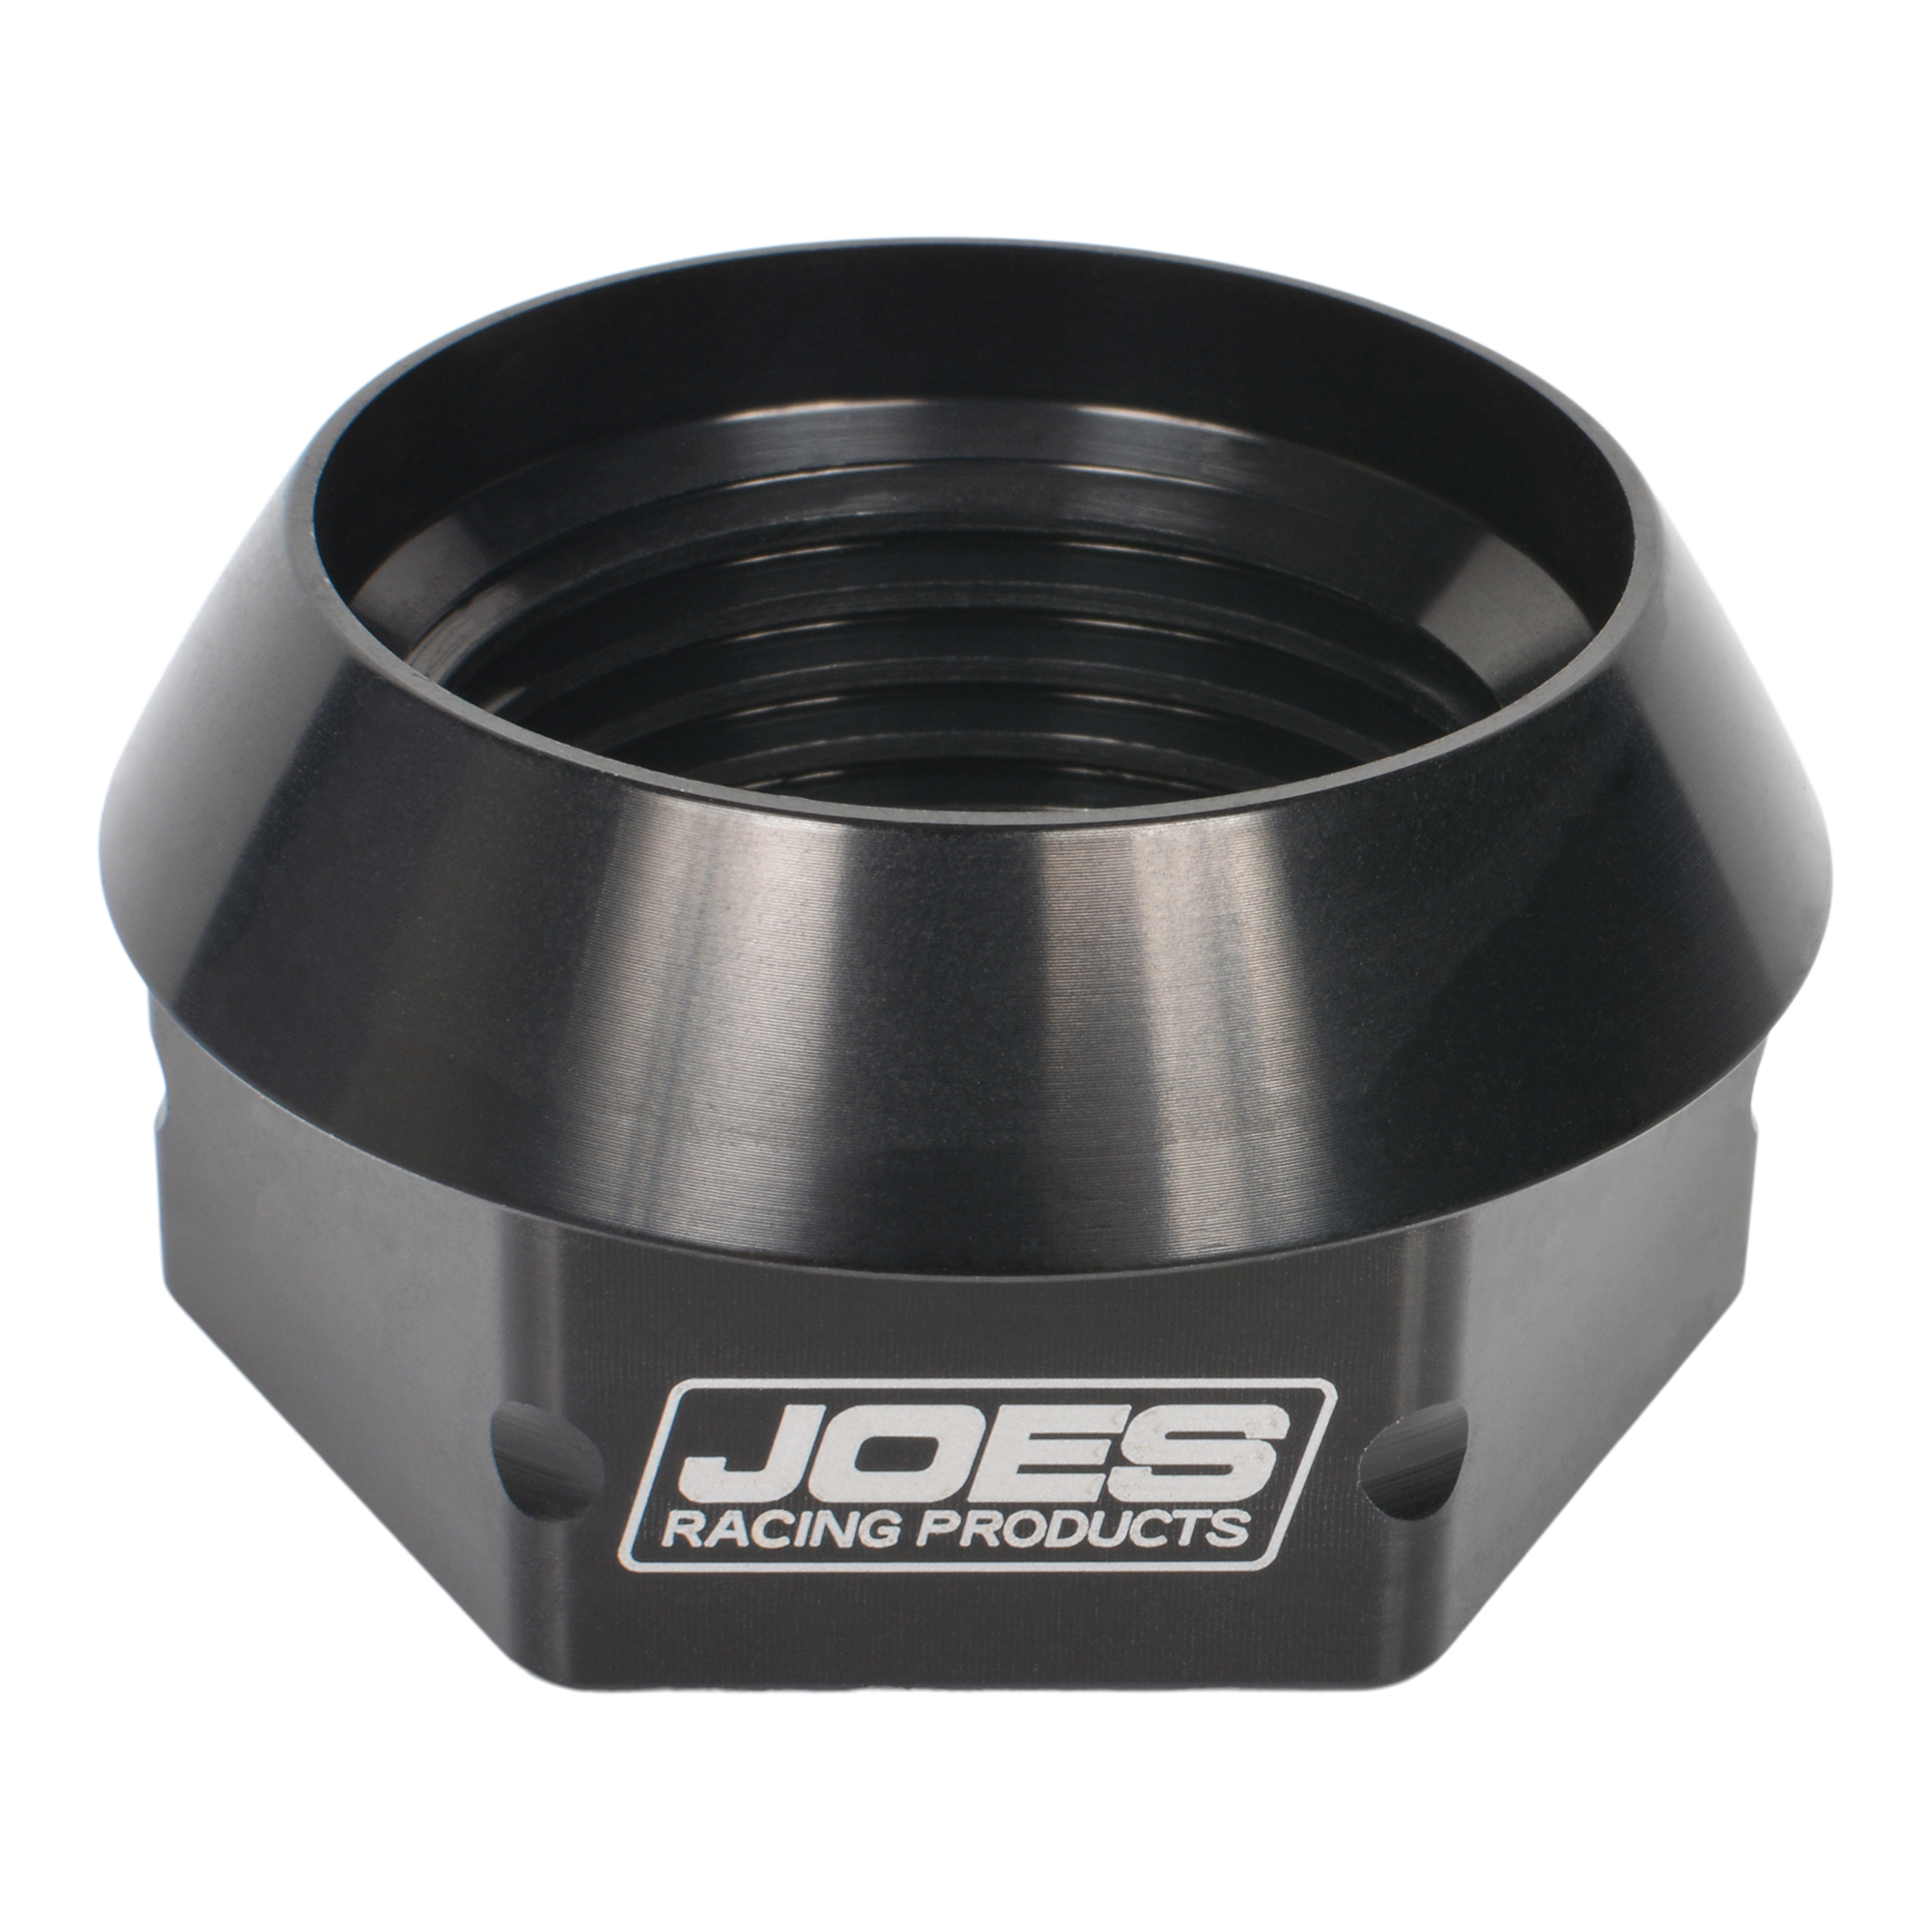 JOES Micro Sprint Rear Axle Nut - Right Hand Thread